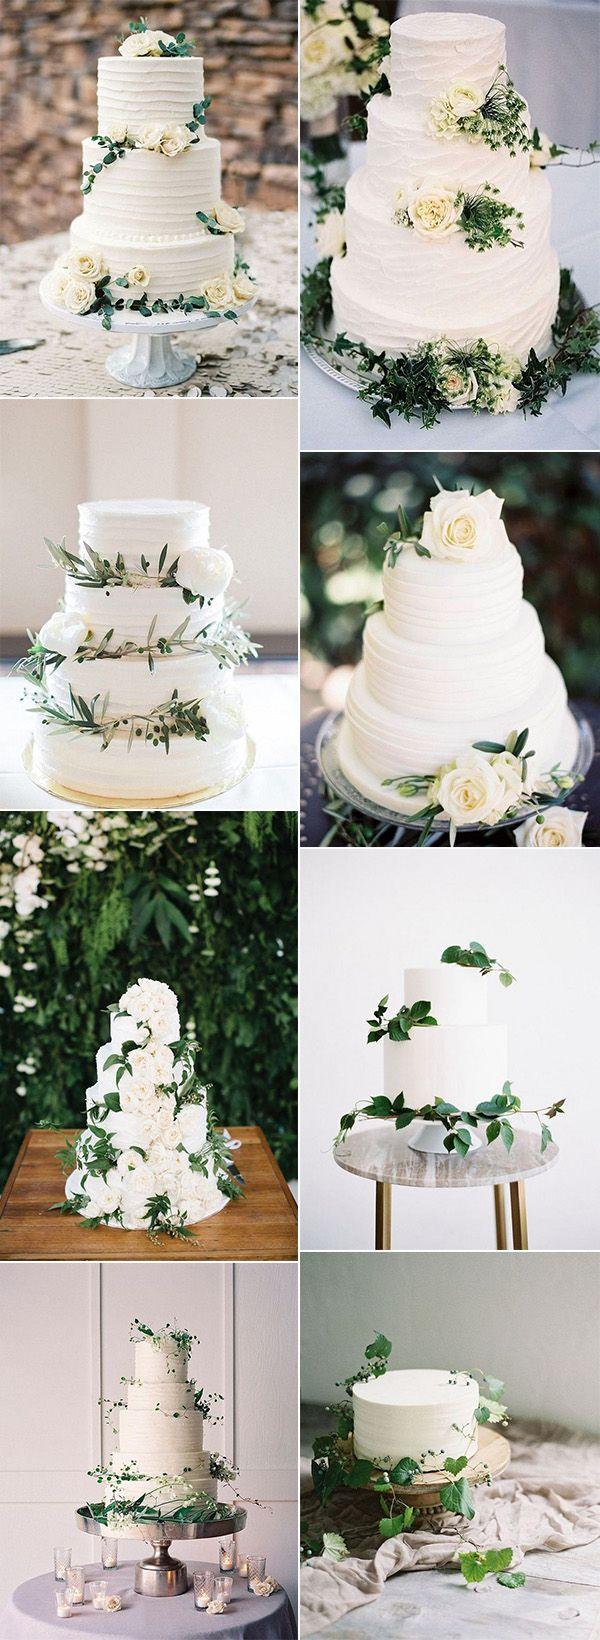 Mariage - 15 Amazing White And Green Elegant Wedding Cakes